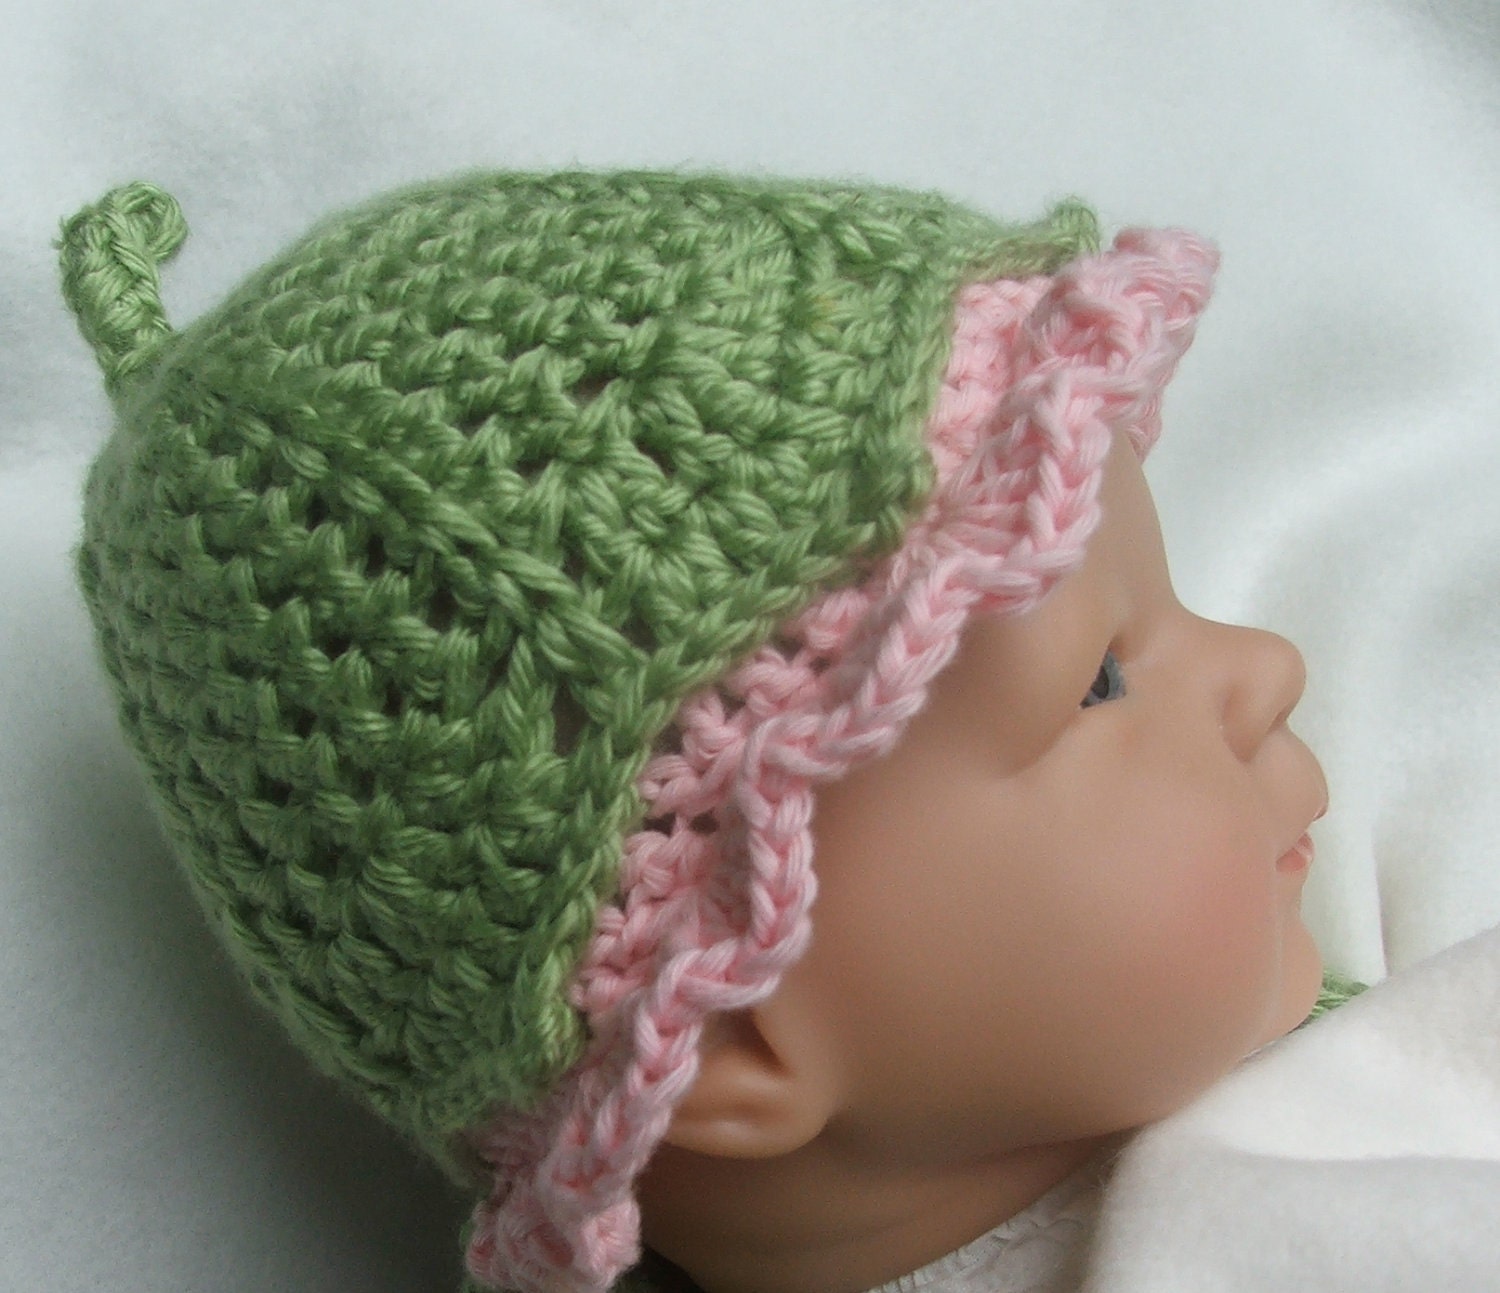 CROCHET HAT Pattern  - Photo Prop pattern for Baby Hat -  Darling Little Flower Bud